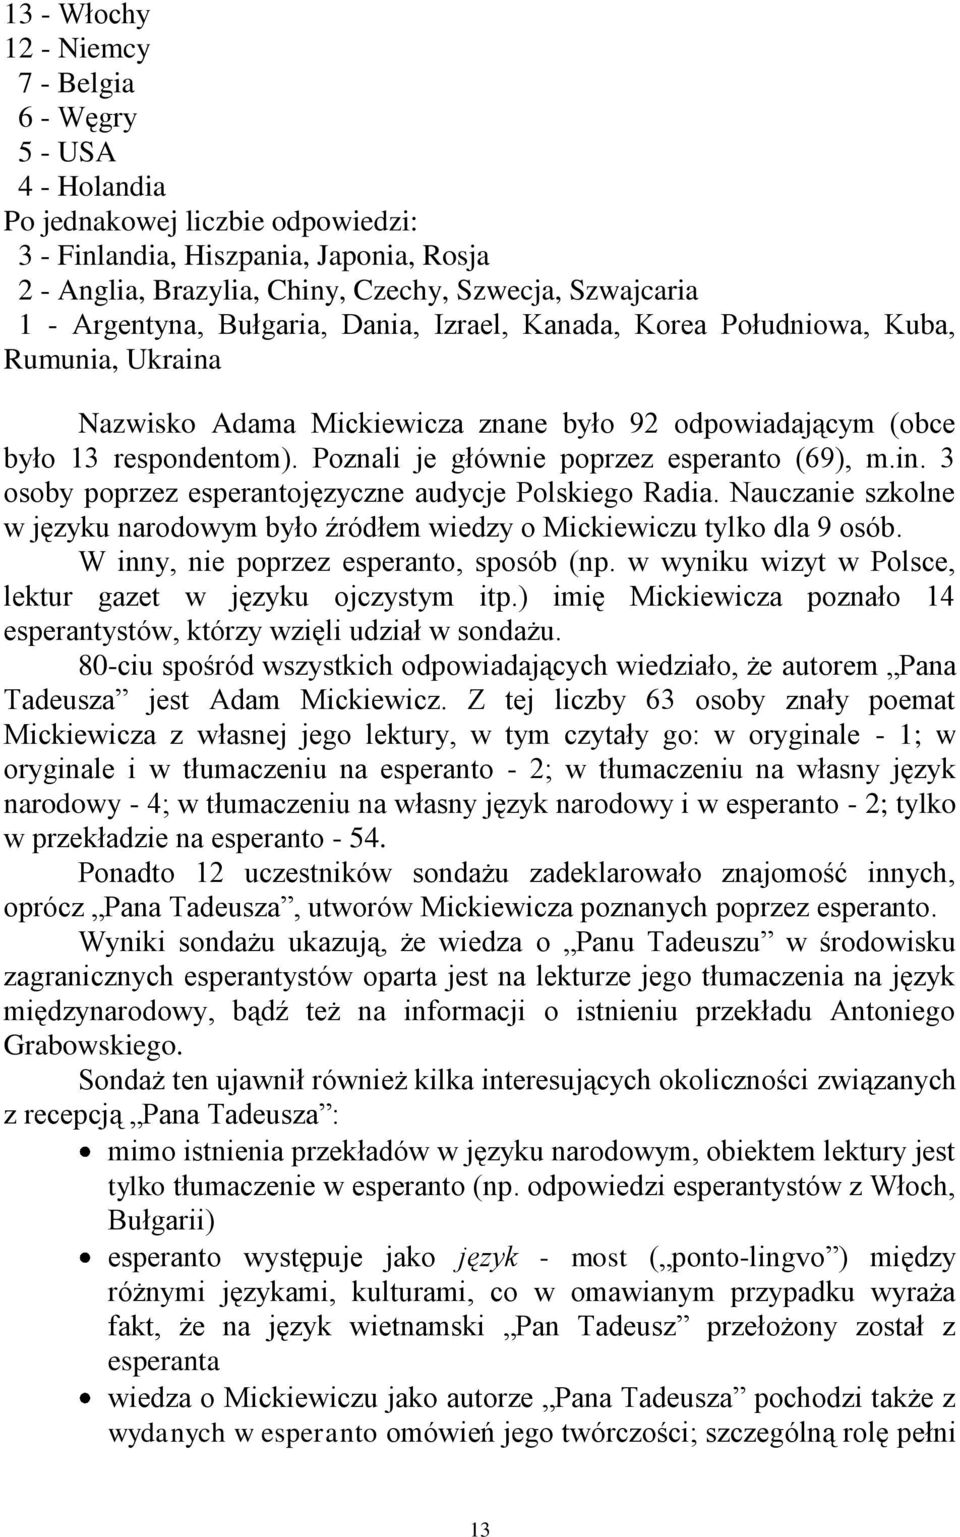 Poznali je głównie poprzez esperanto (69), m.in. 3 osoby poprzez esperantojęzyczne audycje Polskiego Radia. Nauczanie szkolne w języku narodowym było źródłem wiedzy o Mickiewiczu tylko dla 9 osób.